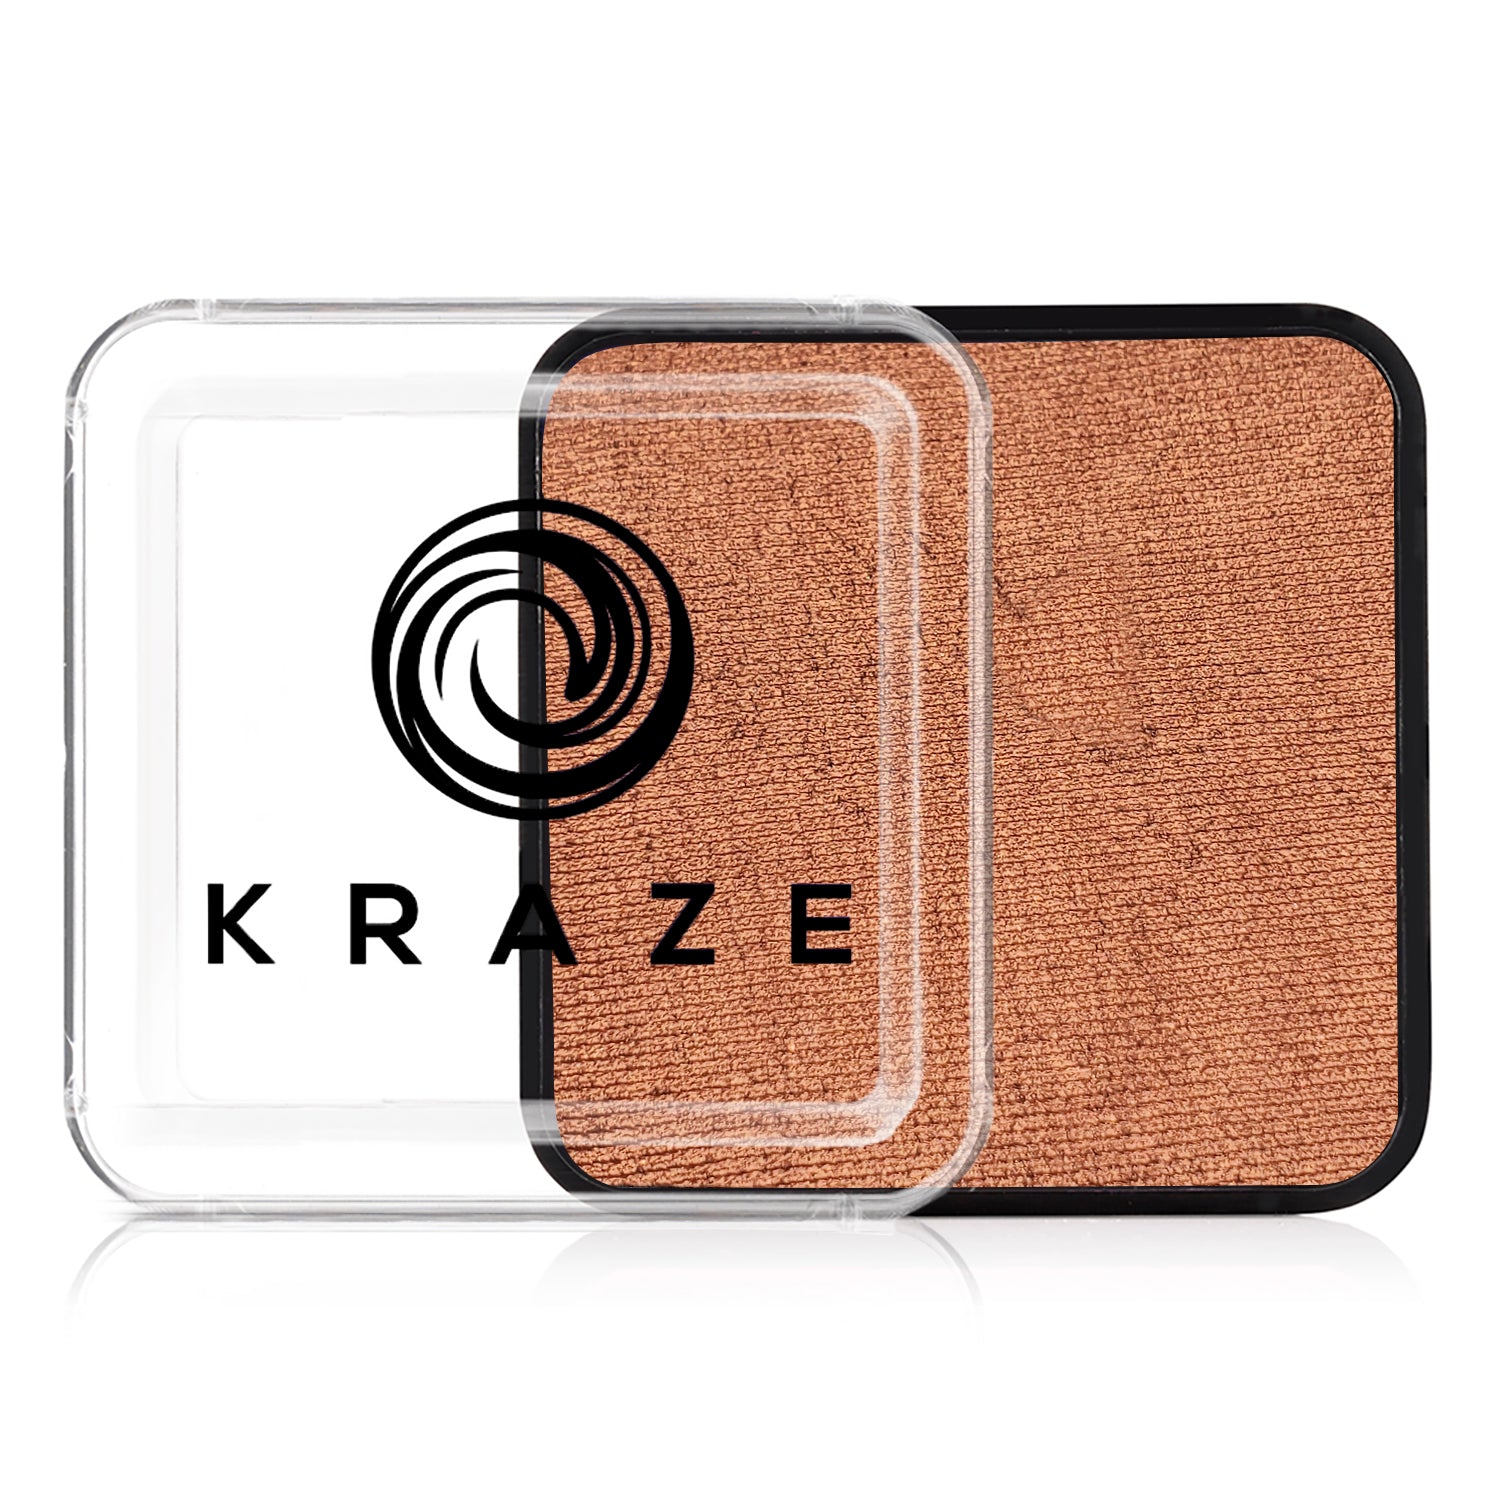 Kraze Square - Metallic Copper (25 gm)